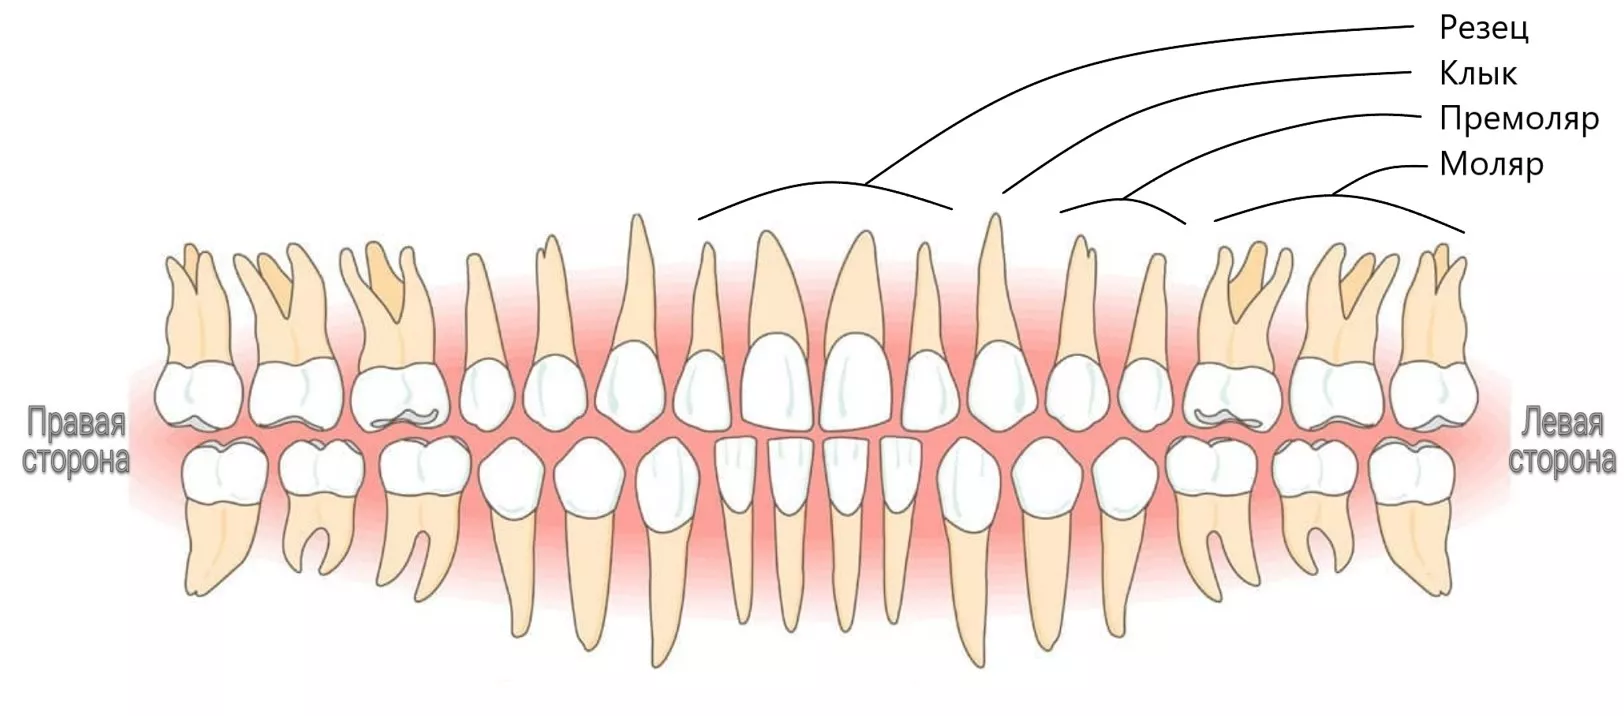 Нумерация и названия зубов в стоматологии – Территория Улыбки